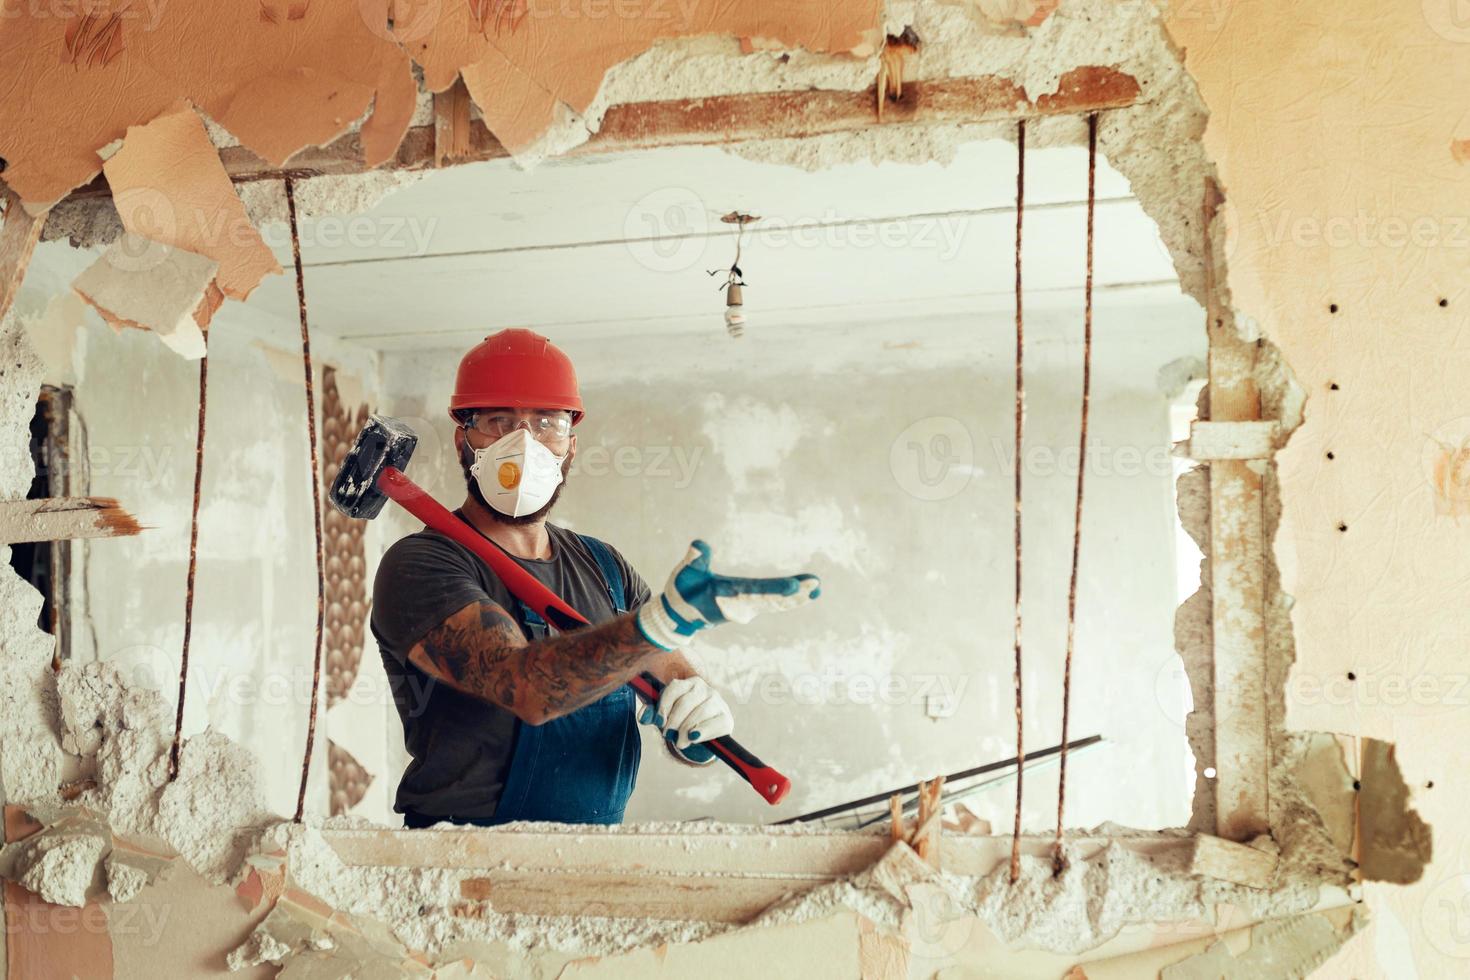 le constructeur avec un marteau dans les mains brise le mur de ciment le constructeur est vêtu d'une combinaison de protection et d'un casque photo